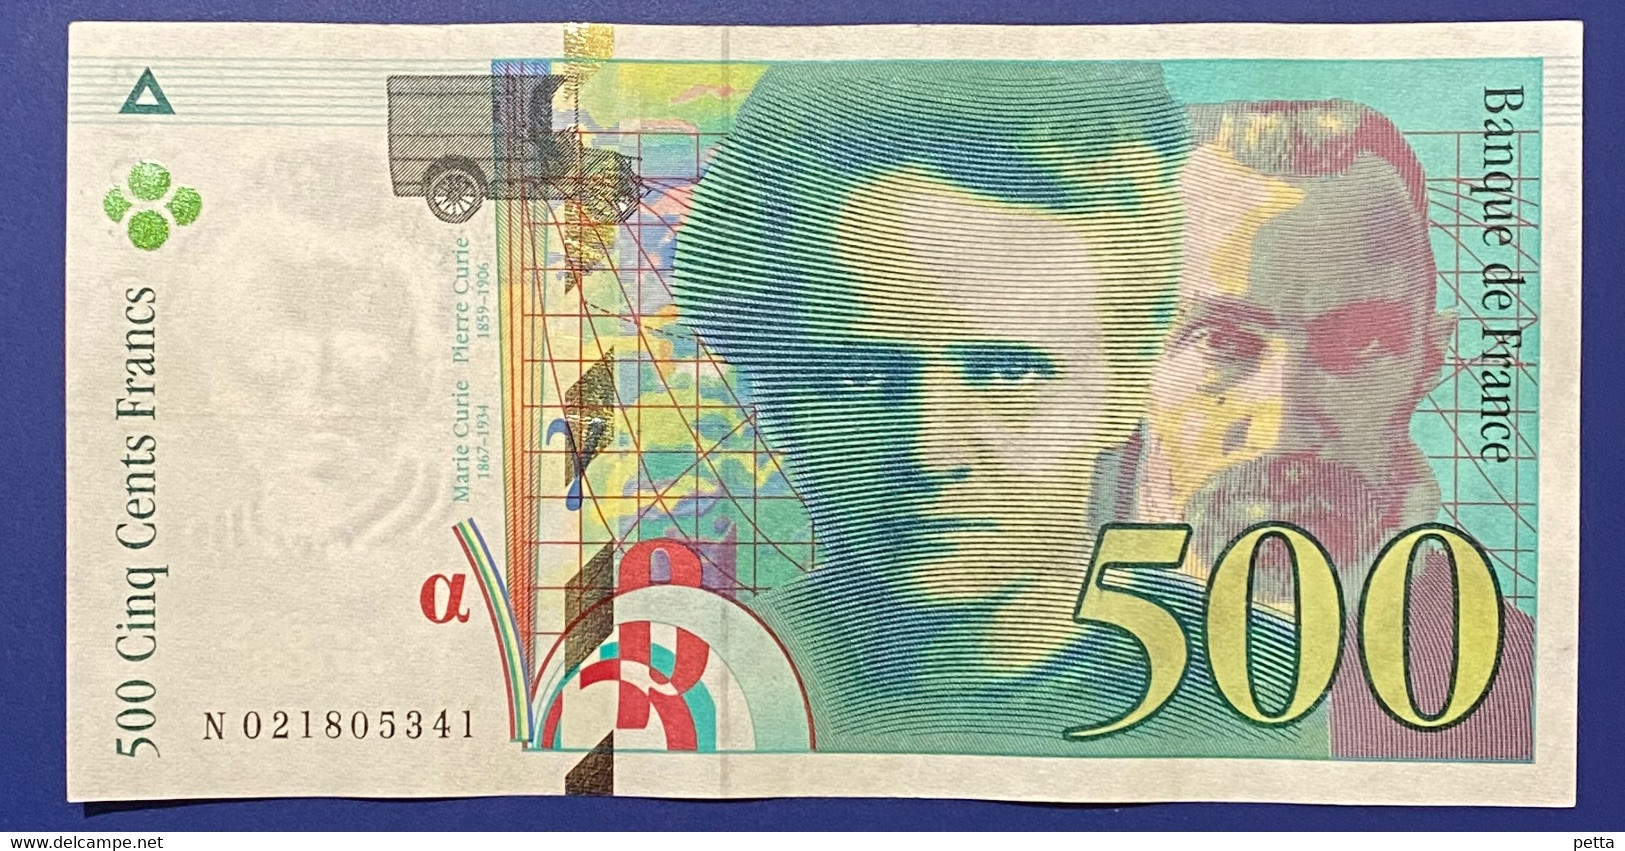 Billet De 500 Francs Pierre Et Marie Curie De 1994 / Alph N 021805341 / Vendu En L’état - 500 F 1994-2000 ''Pierre En Marie Curie''